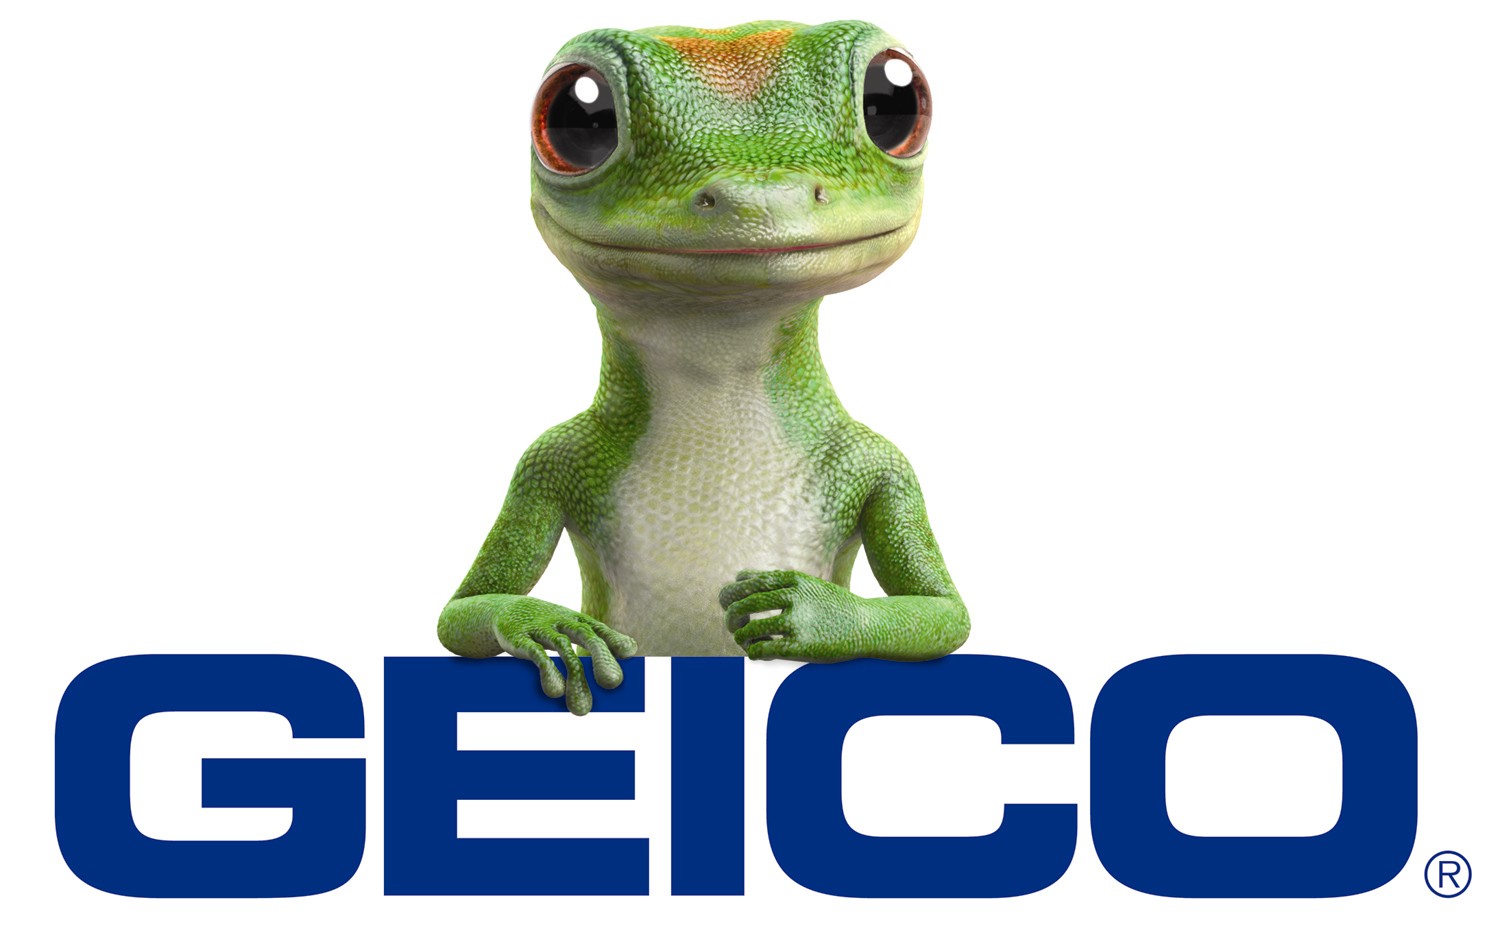 1. The-Gecko-GEICO